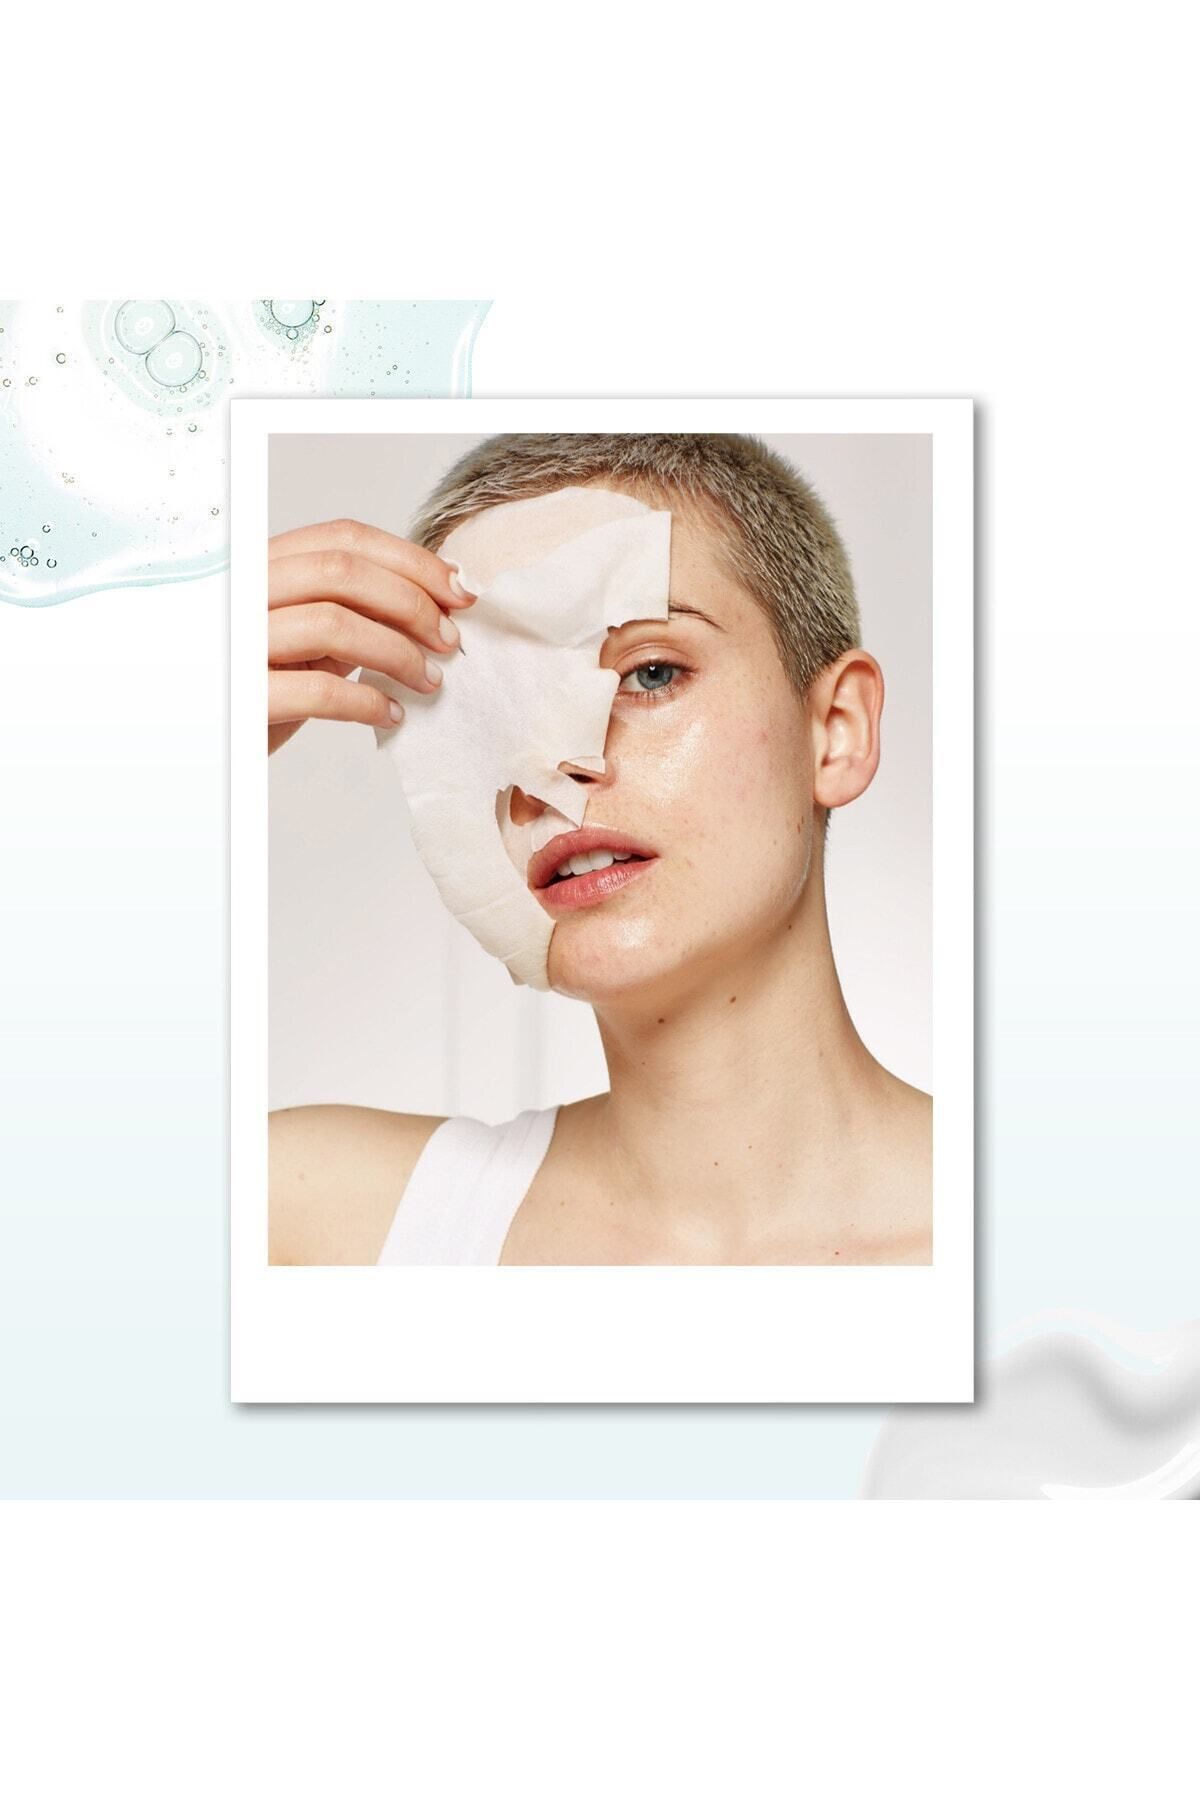 Garnier ماسک کاغذی گارنیه برای حمایت از پوست در برابر علائم پیری